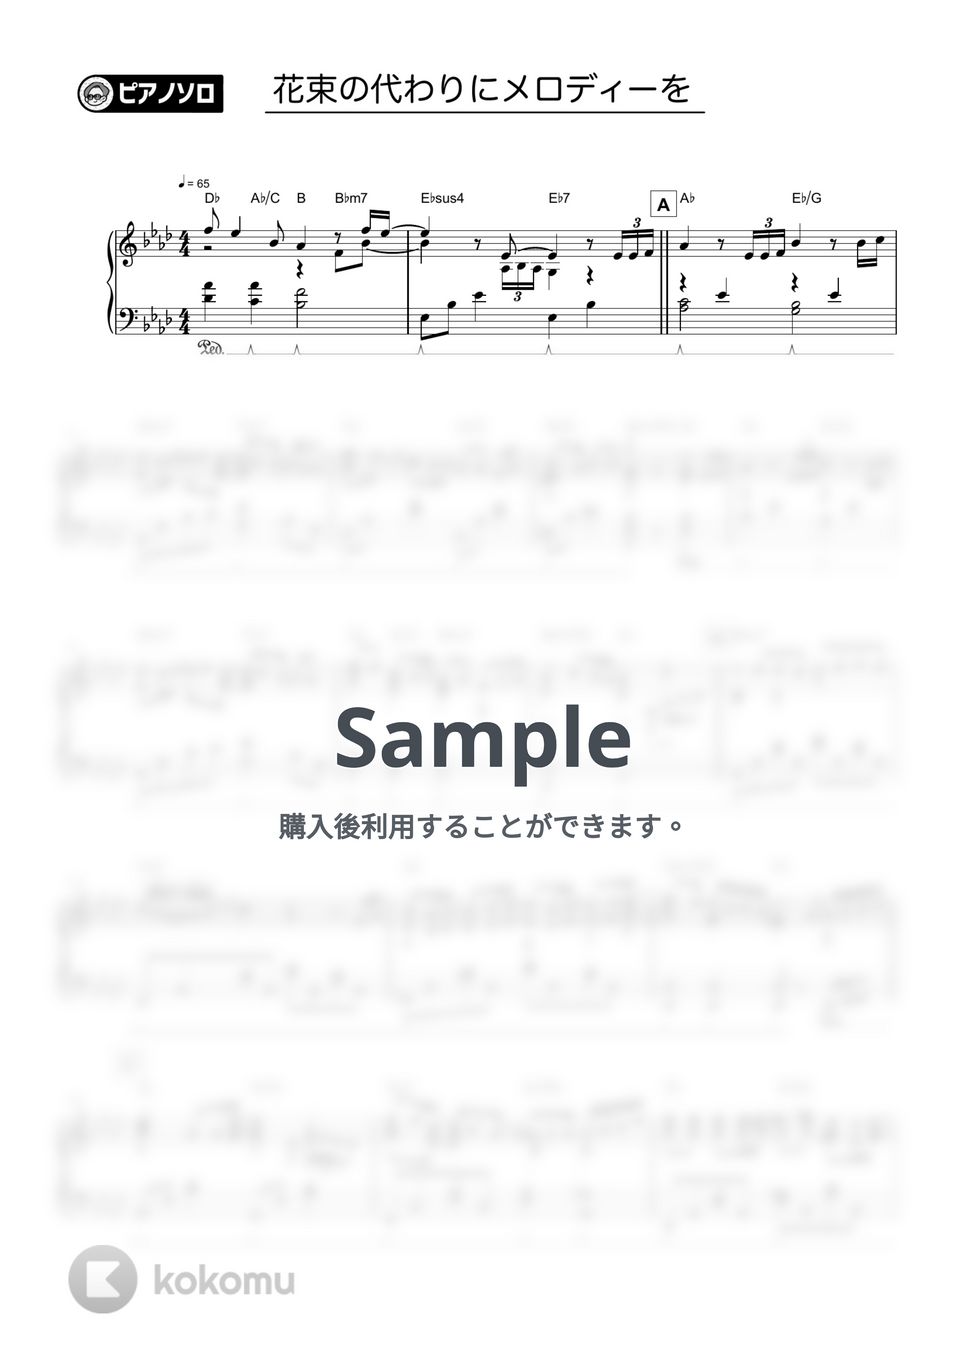 清水翔太 - 花束のかわりにメロディーを by シータピアノ